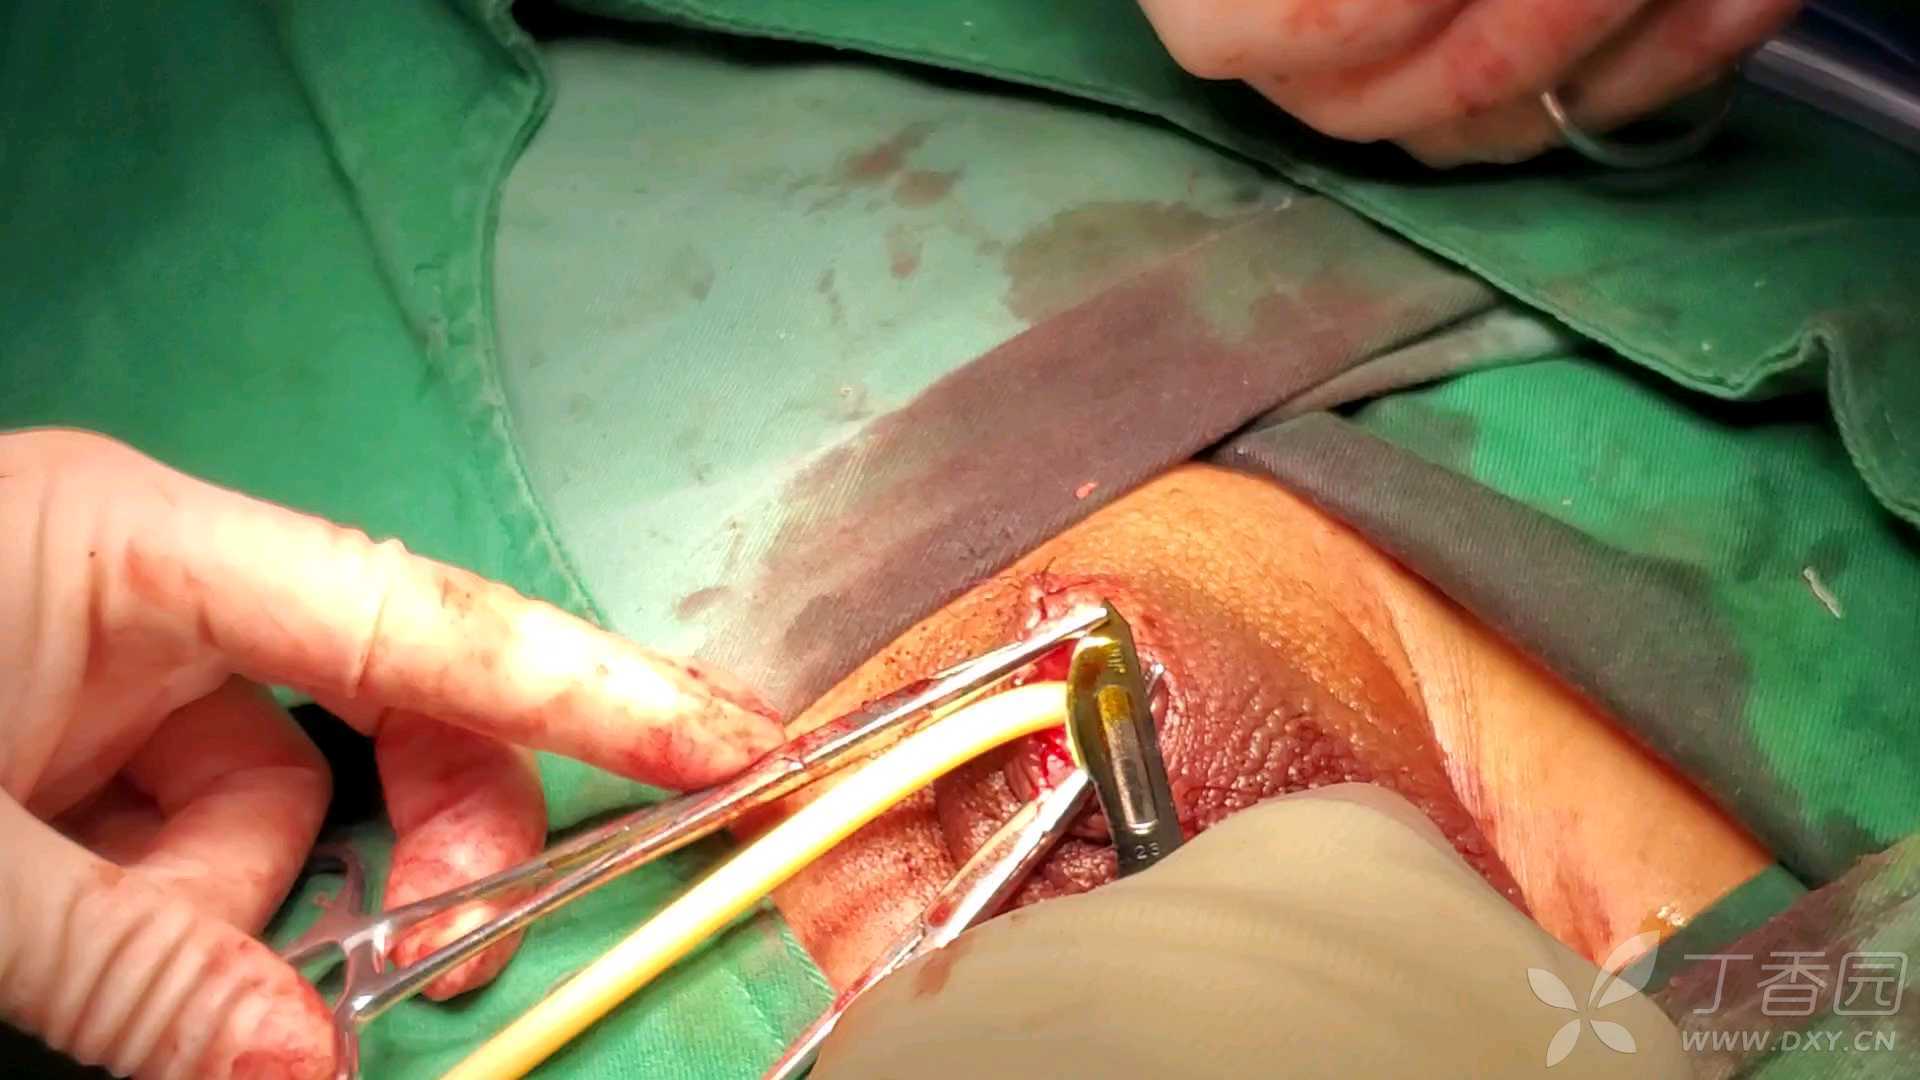 女性膀胱手术切开图片